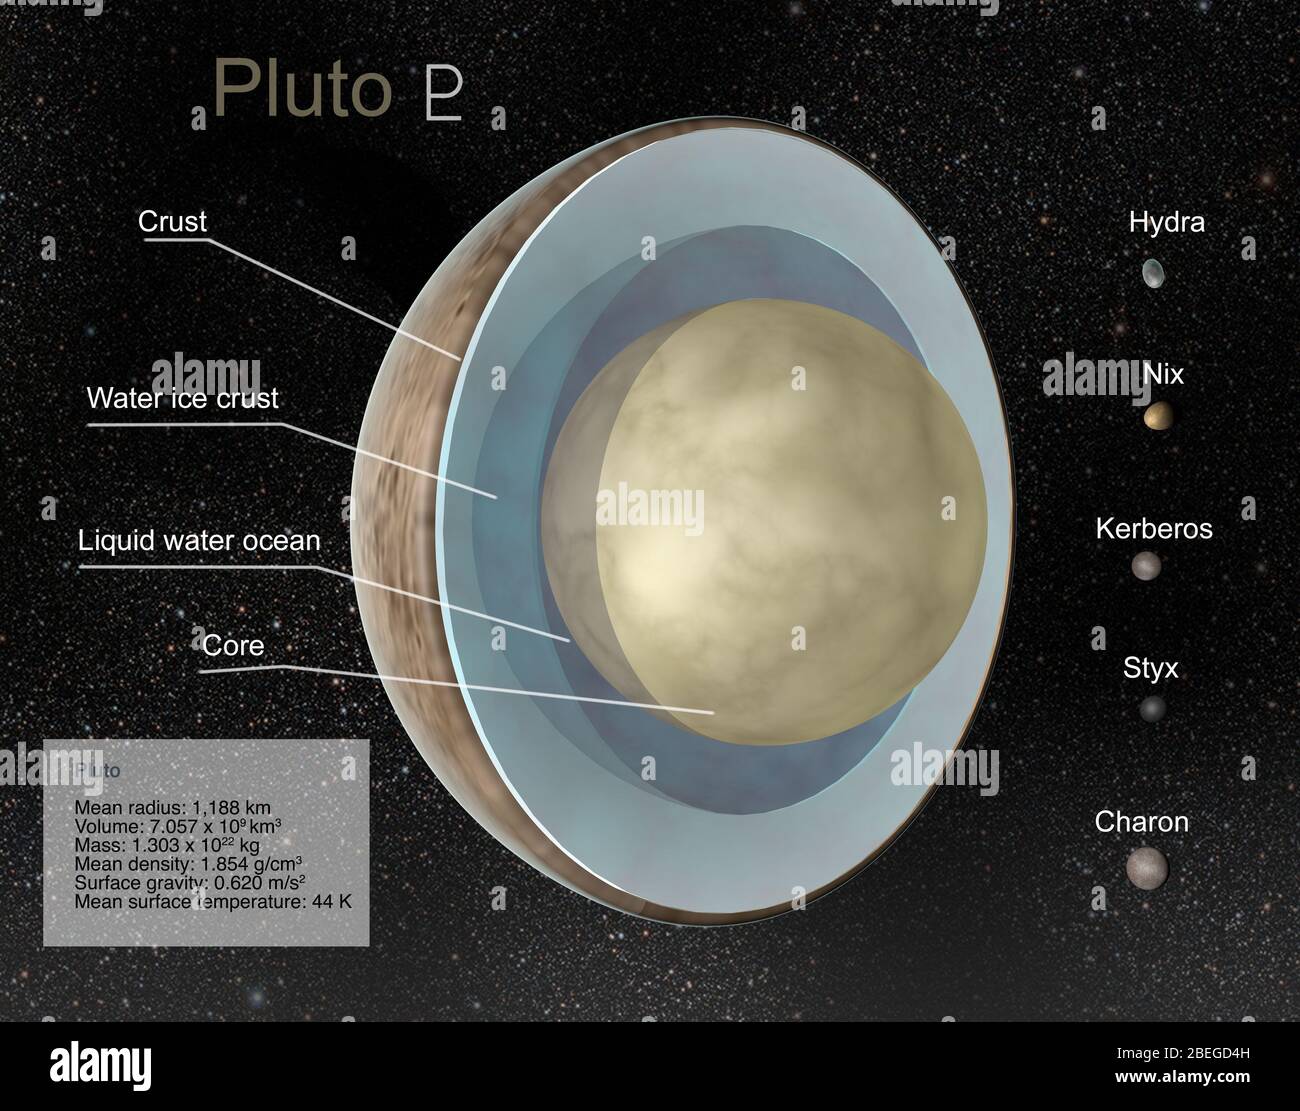 Illustrazione di Plutone in spaccato che mostra le proprietà del pianeta nano, così come le sue cinque lune conosciute: Charon, Styx, Nix, Kerberos e Hydra. Foto Stock